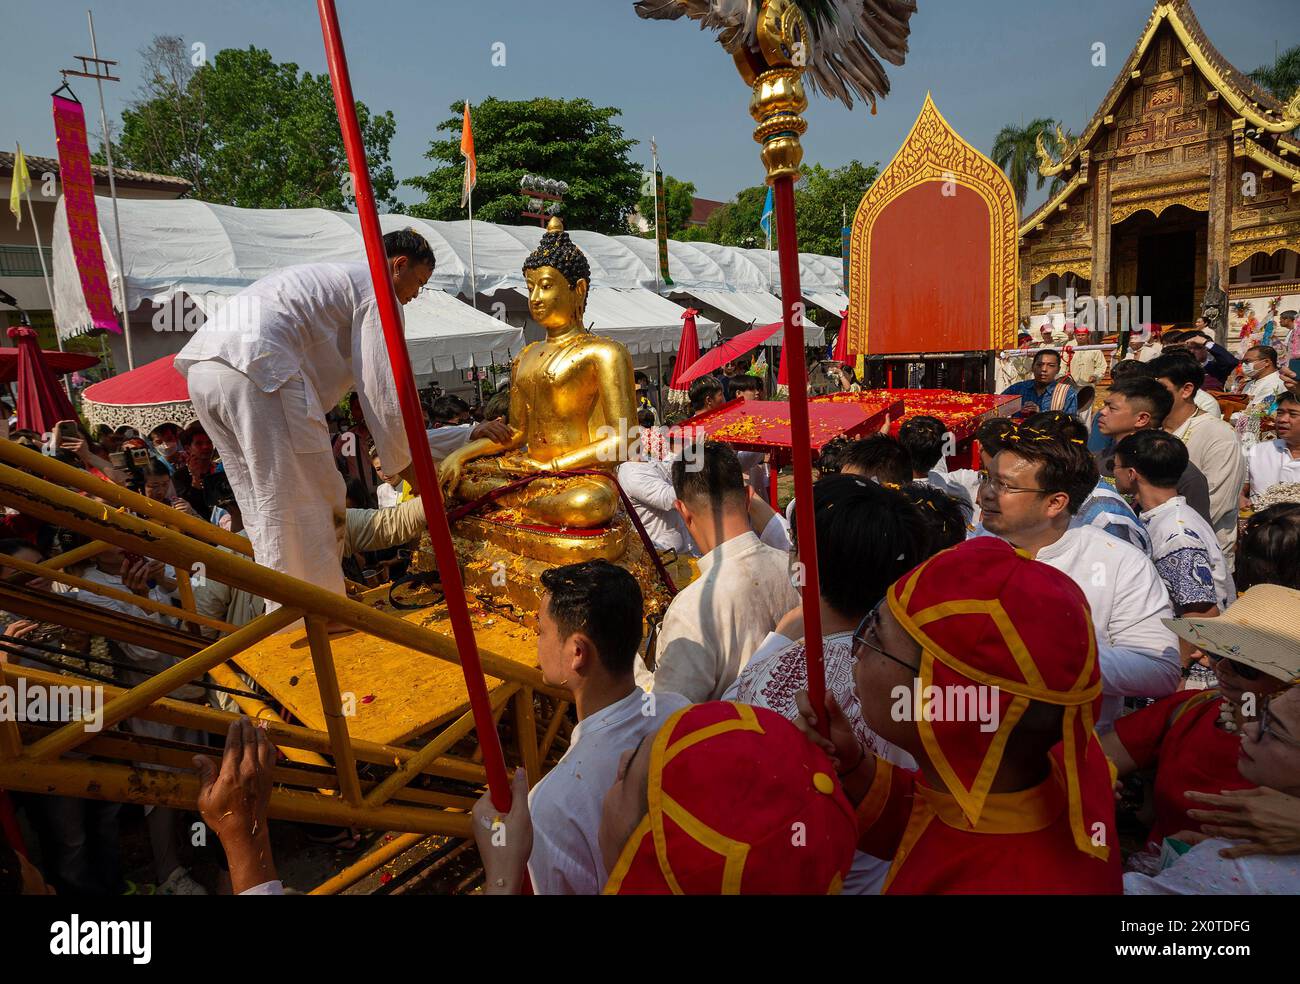 Los tailandeses vistiendo trajes tradicionales vistos durante la procesión de la estatua del Buda Phra Sihing para conmemorar las celebraciones de Songkran en el templo Wat Phra Singh Woramahaviharn. La fiesta de Songkran también se conoce como el festival del agua que se celebra anualmente el día tradicional de Año Nuevo tailandés el 13 de abril, pulverizando agua y arrojando polvo entre sí, como un signo simbólico de limpieza y lavado de los pecados del año pasado. Foto de stock